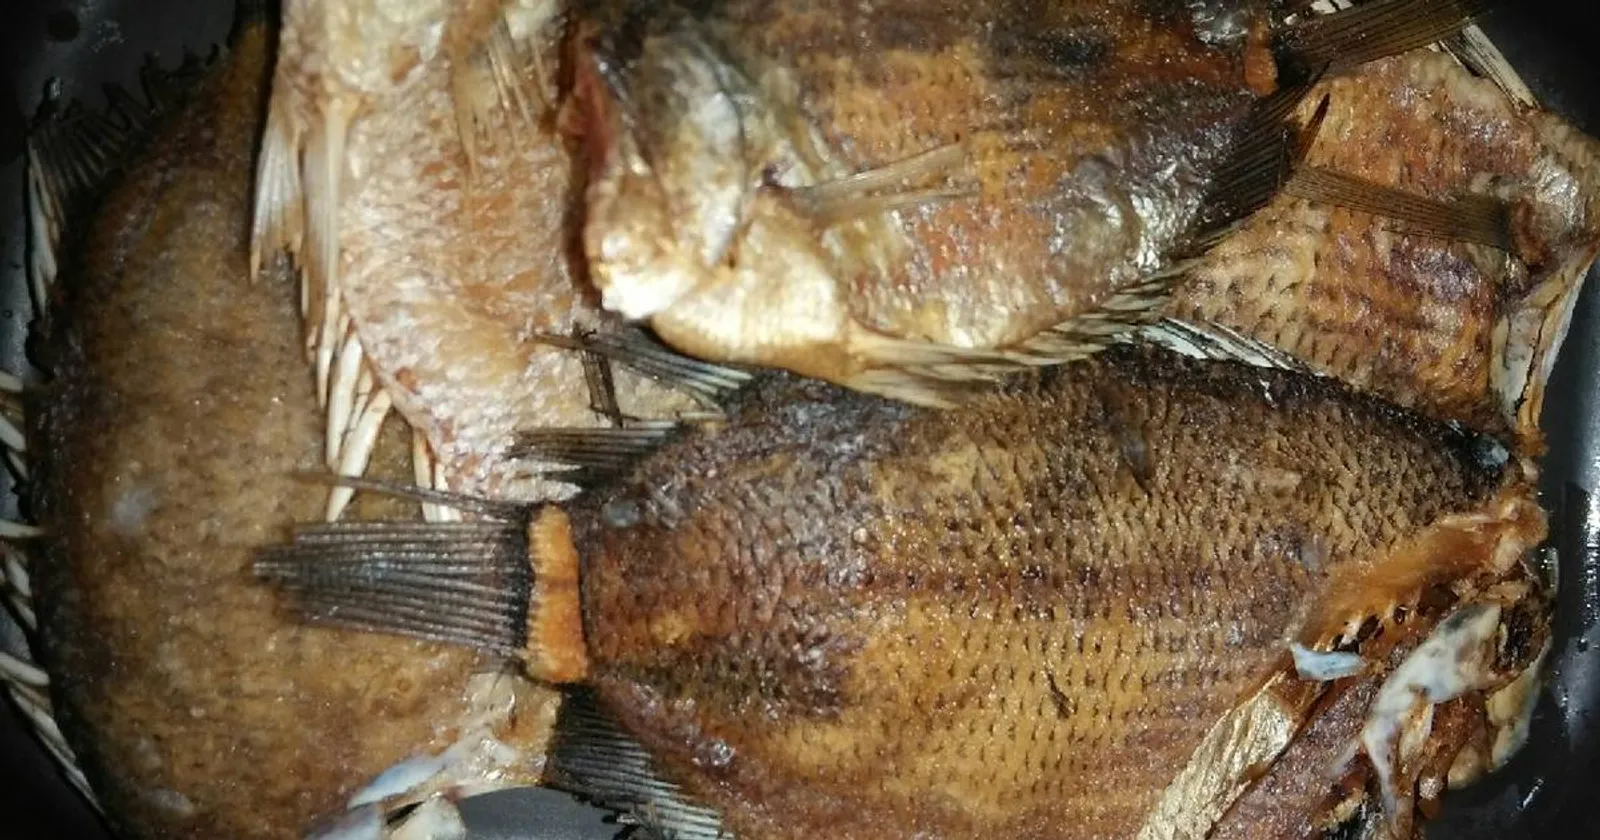 Sedap di Mulut, Ini 7 Jenis Ikan Asin Populer di Masyarakat Indonesia